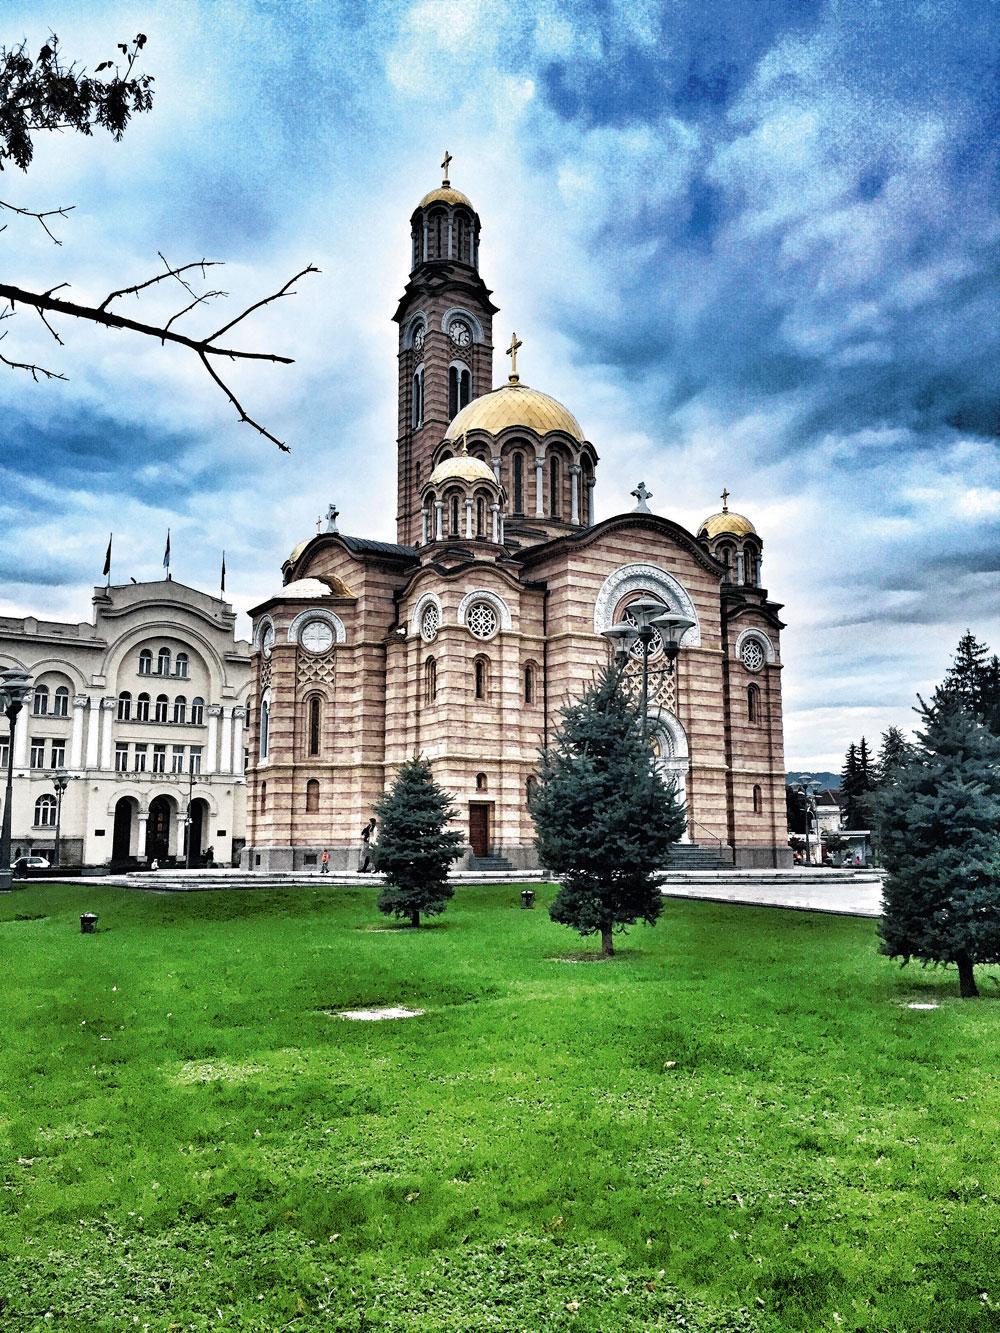 De Christus Verlosserkathedraal met gouden koepel in Banja Luka.